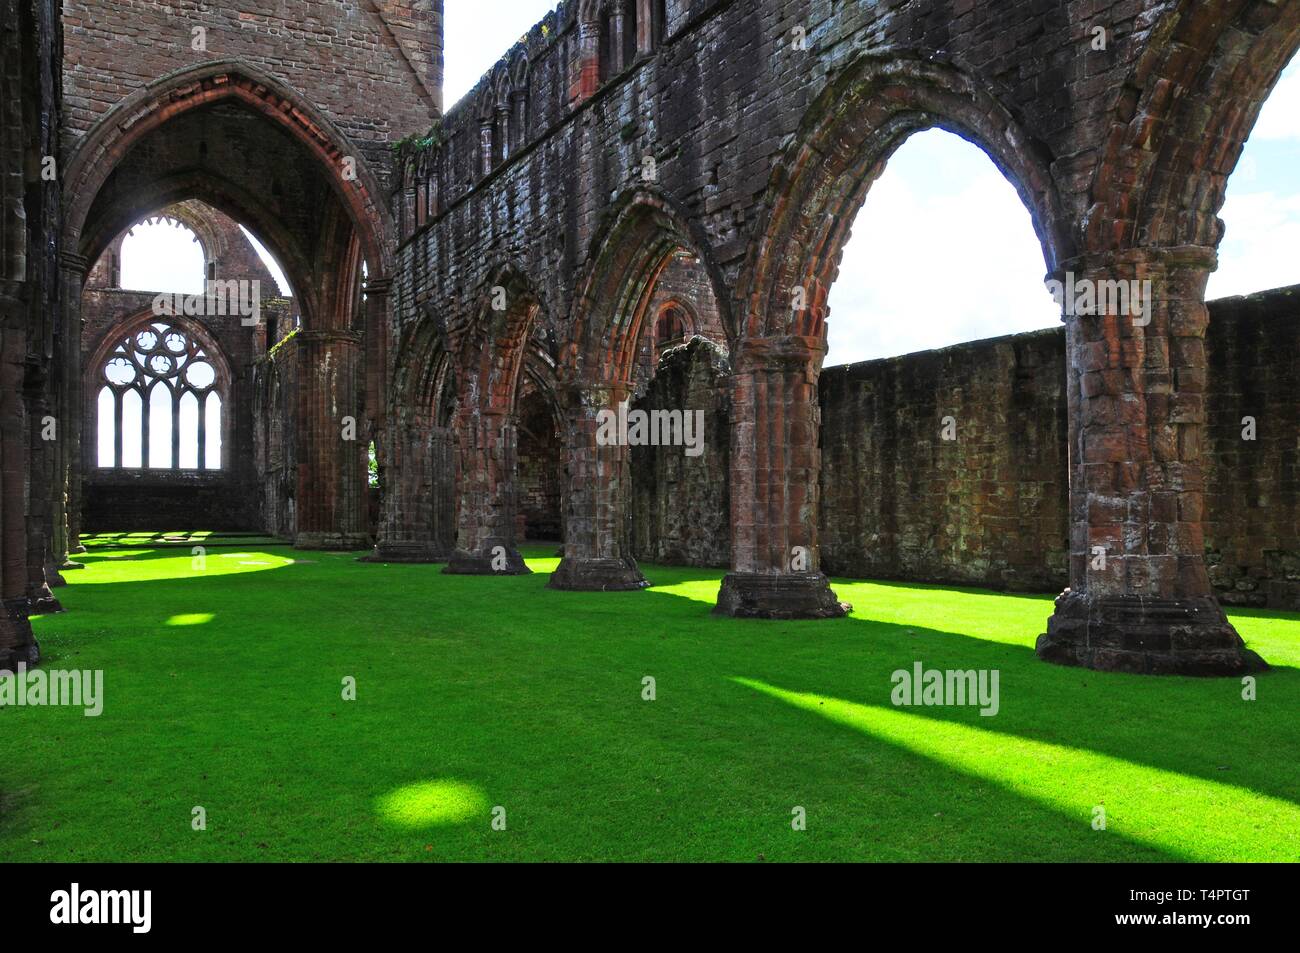 Sweetheart Abbey, Dumfries und Galloway, Schottland, Vereinigtes Königreich, Großbritannien, Europa Stockfoto